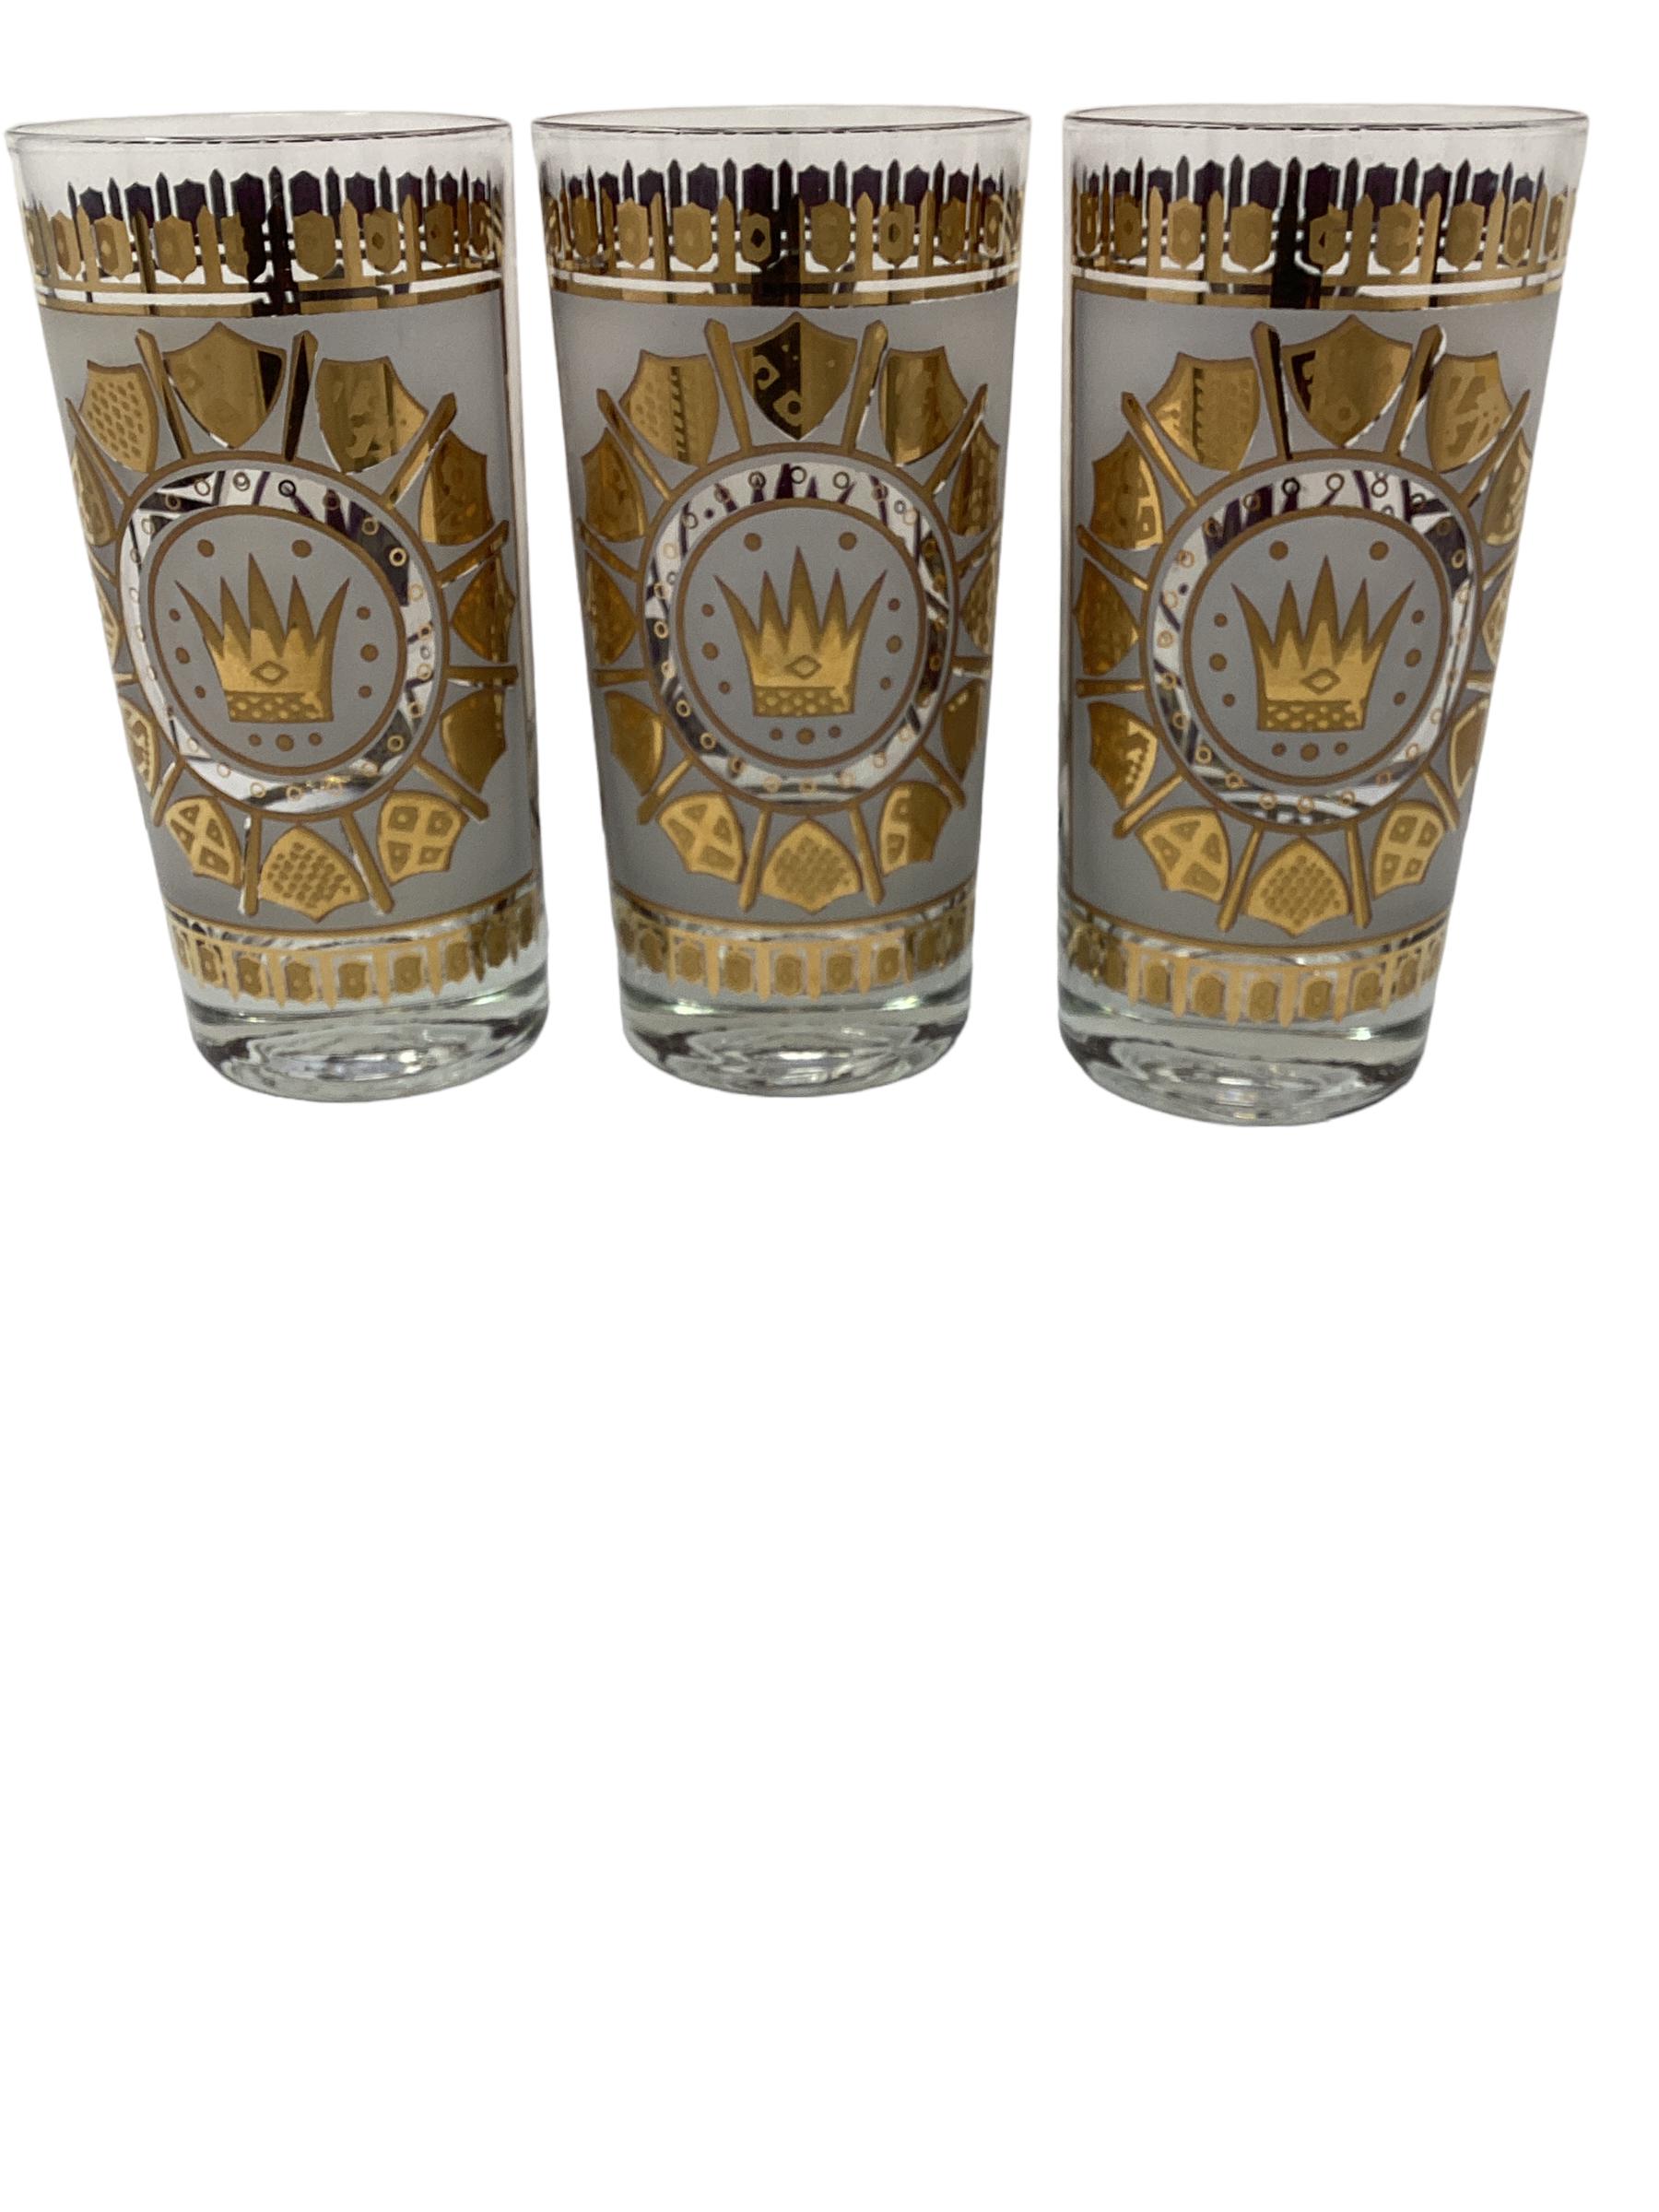 Lot de 8 verres Highball Vintage Mid Century avec décorations de boucliers et de couronnes sur fond blanc givré.